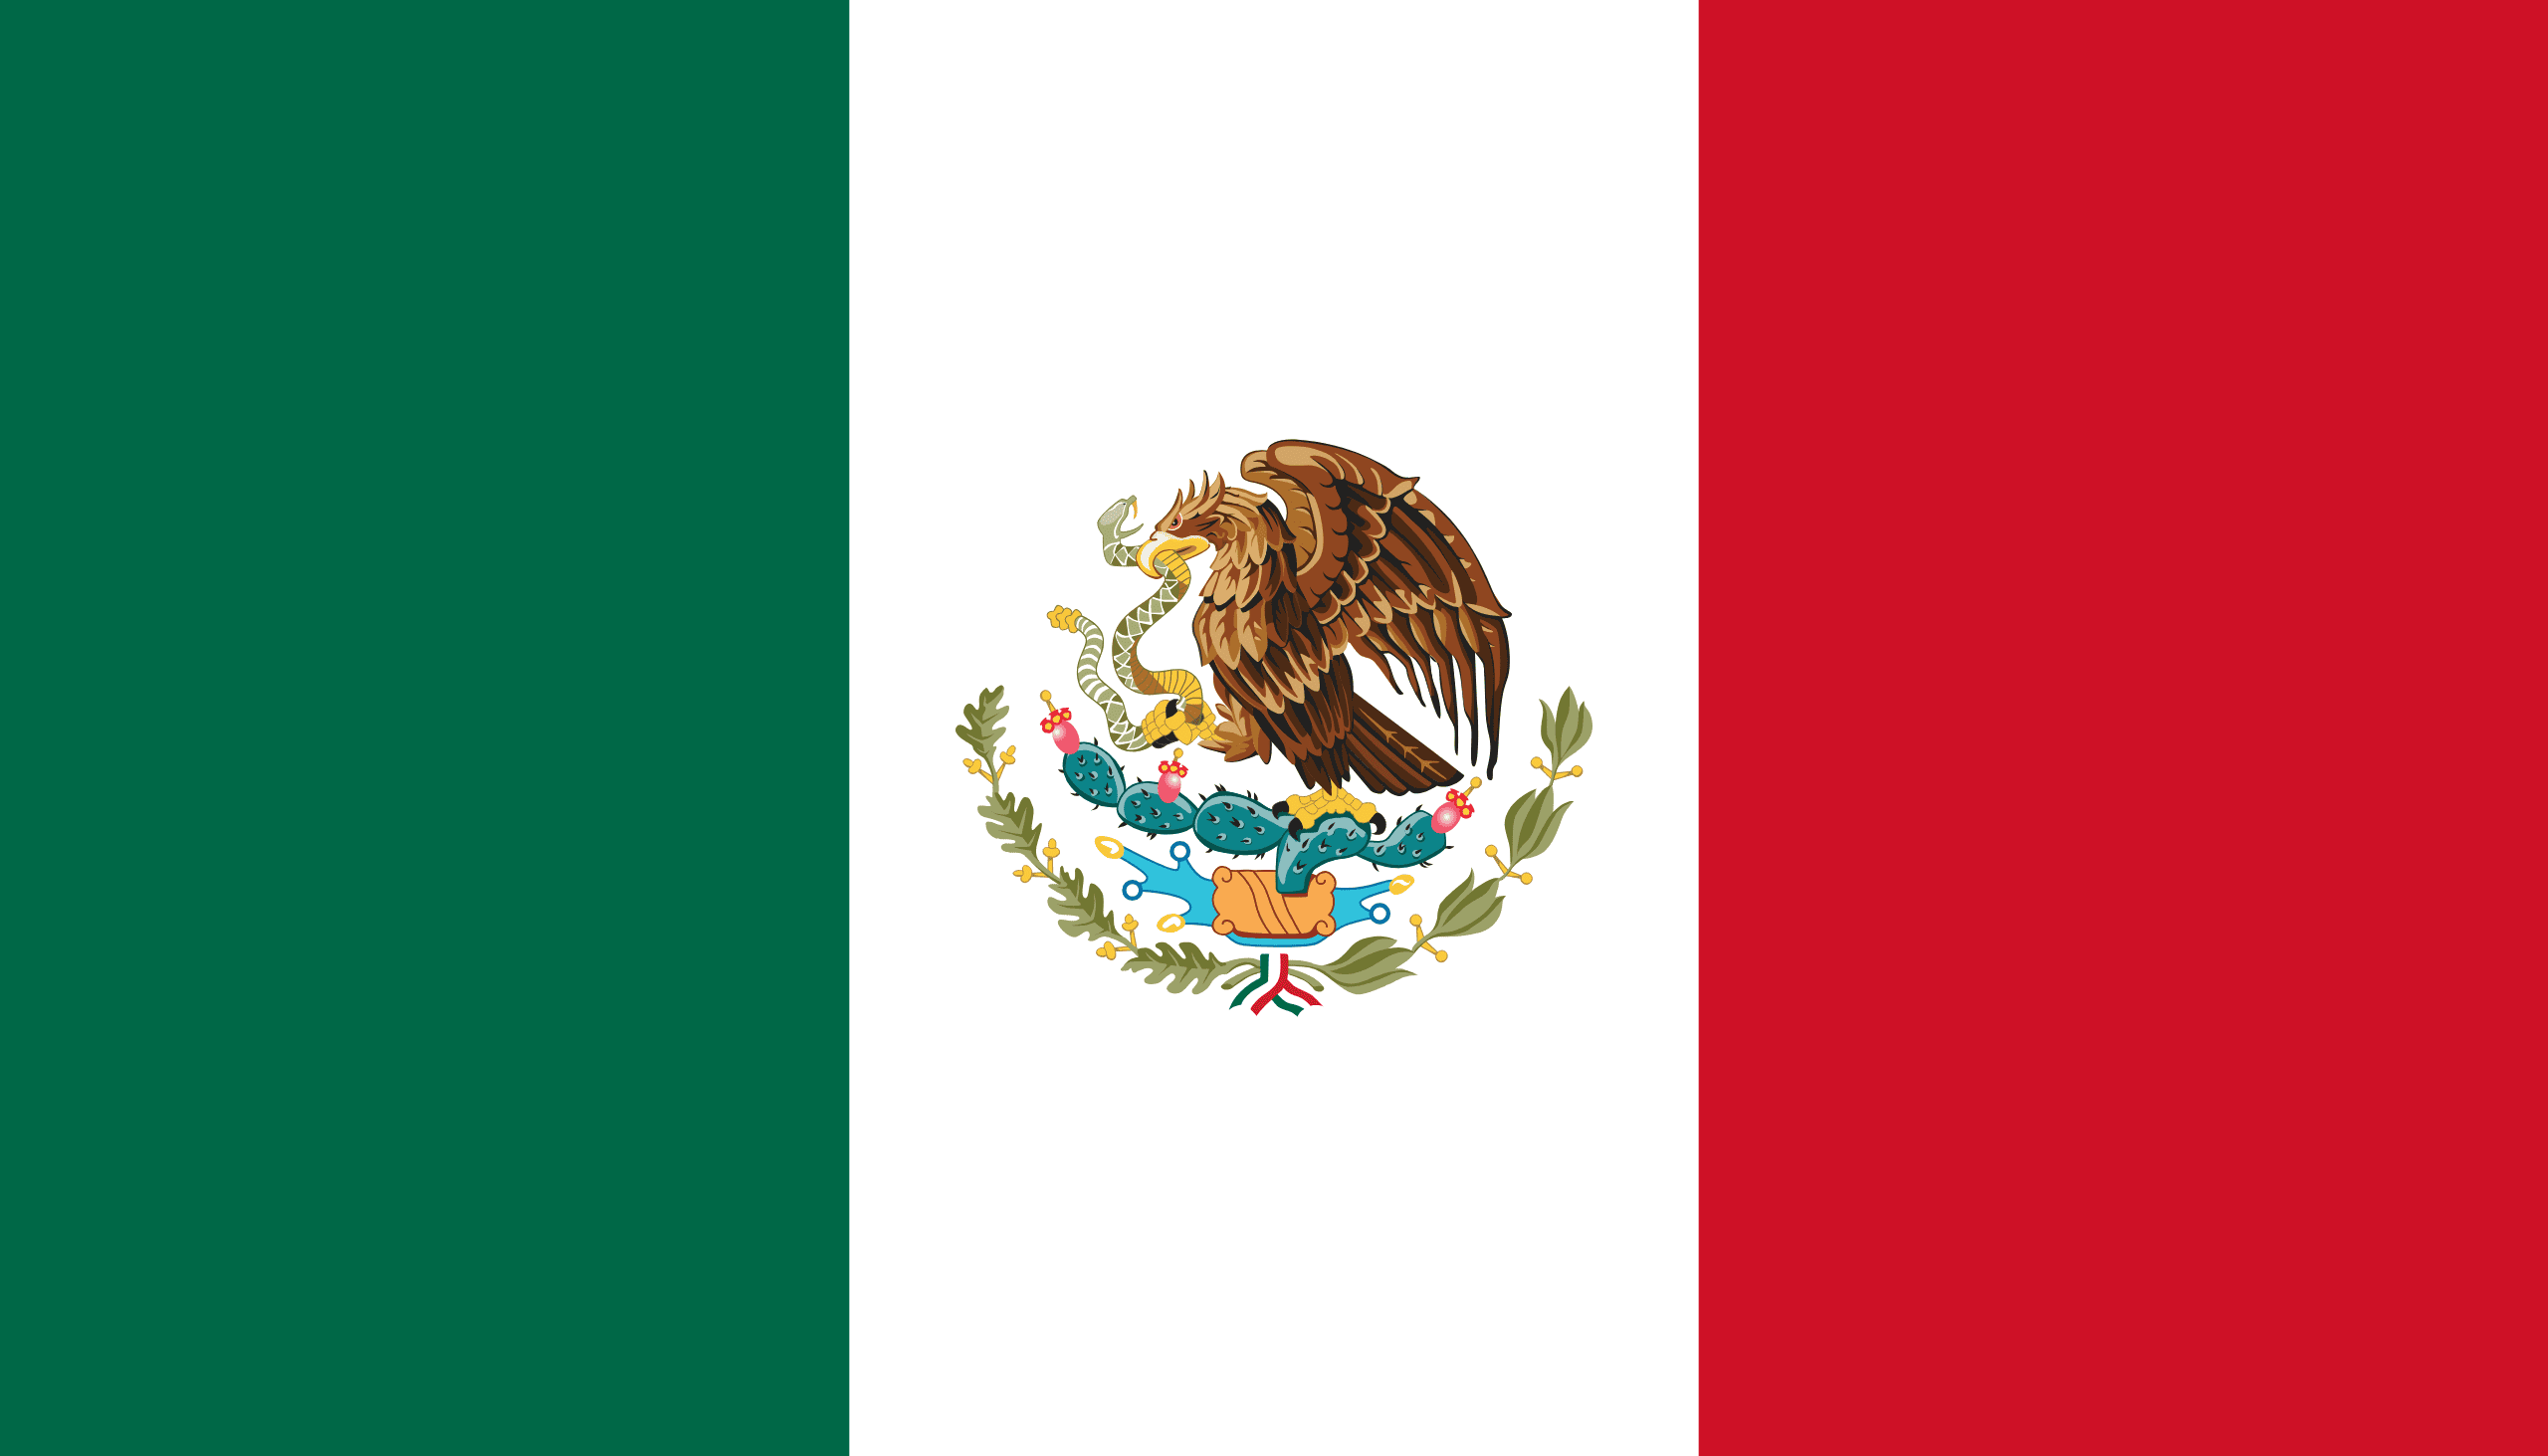 imagenes de la bandera de mexico